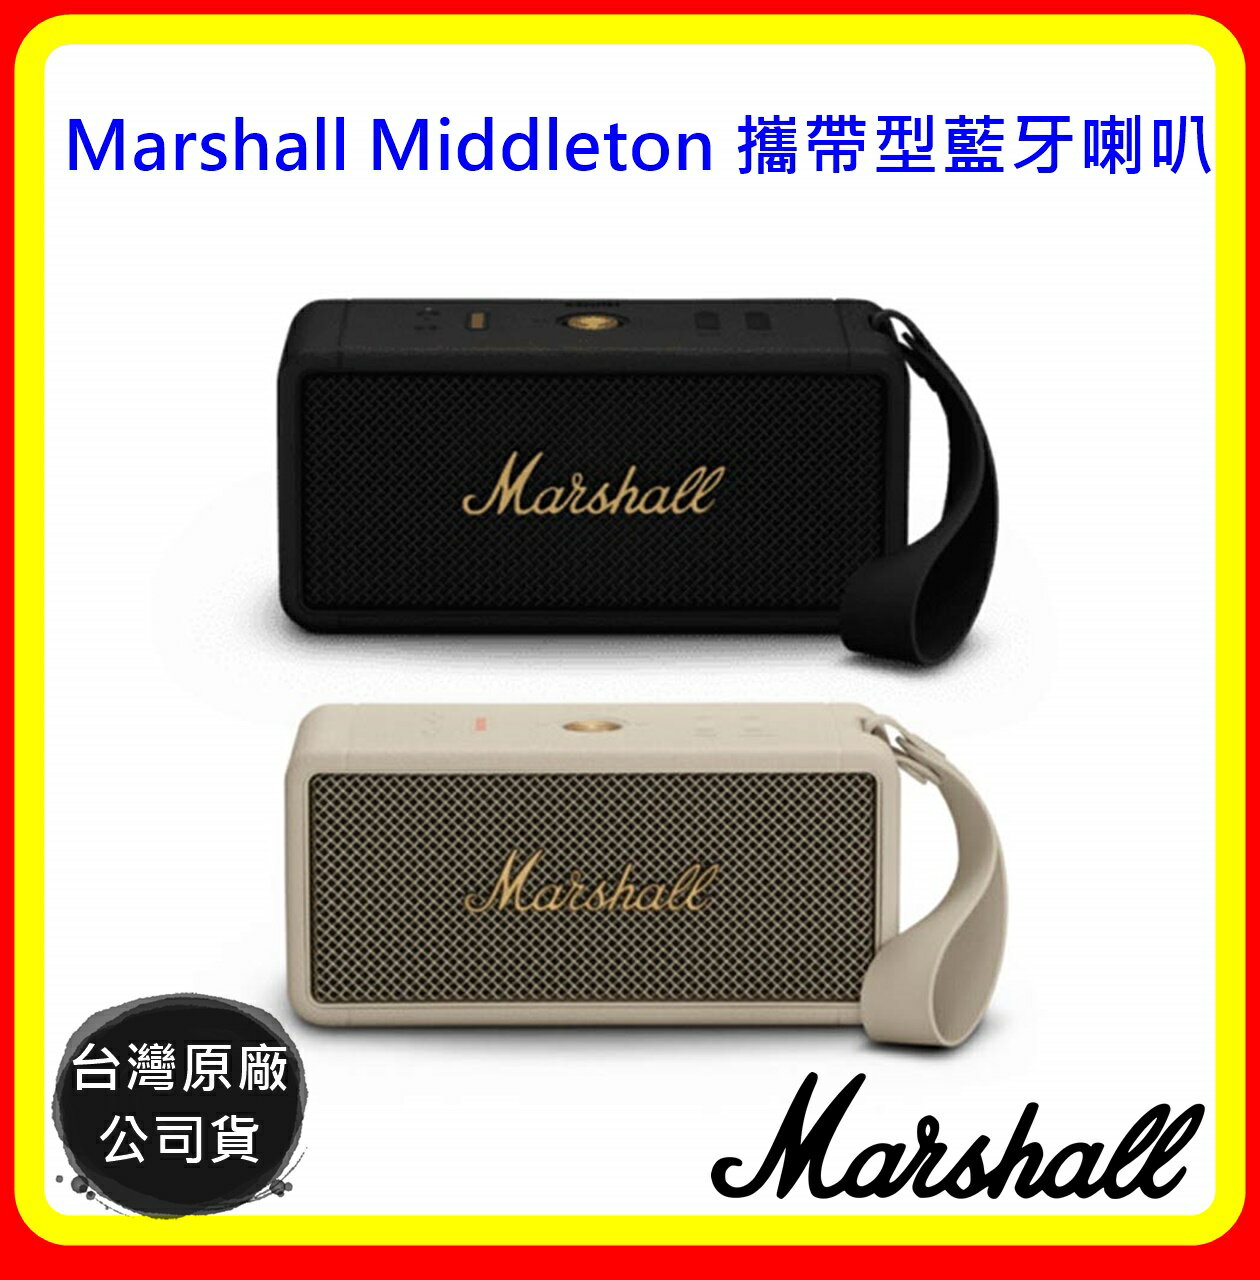 【現貨】Marshall Middleton 攜帶型藍牙喇叭(2色) 台灣原廠公司貨